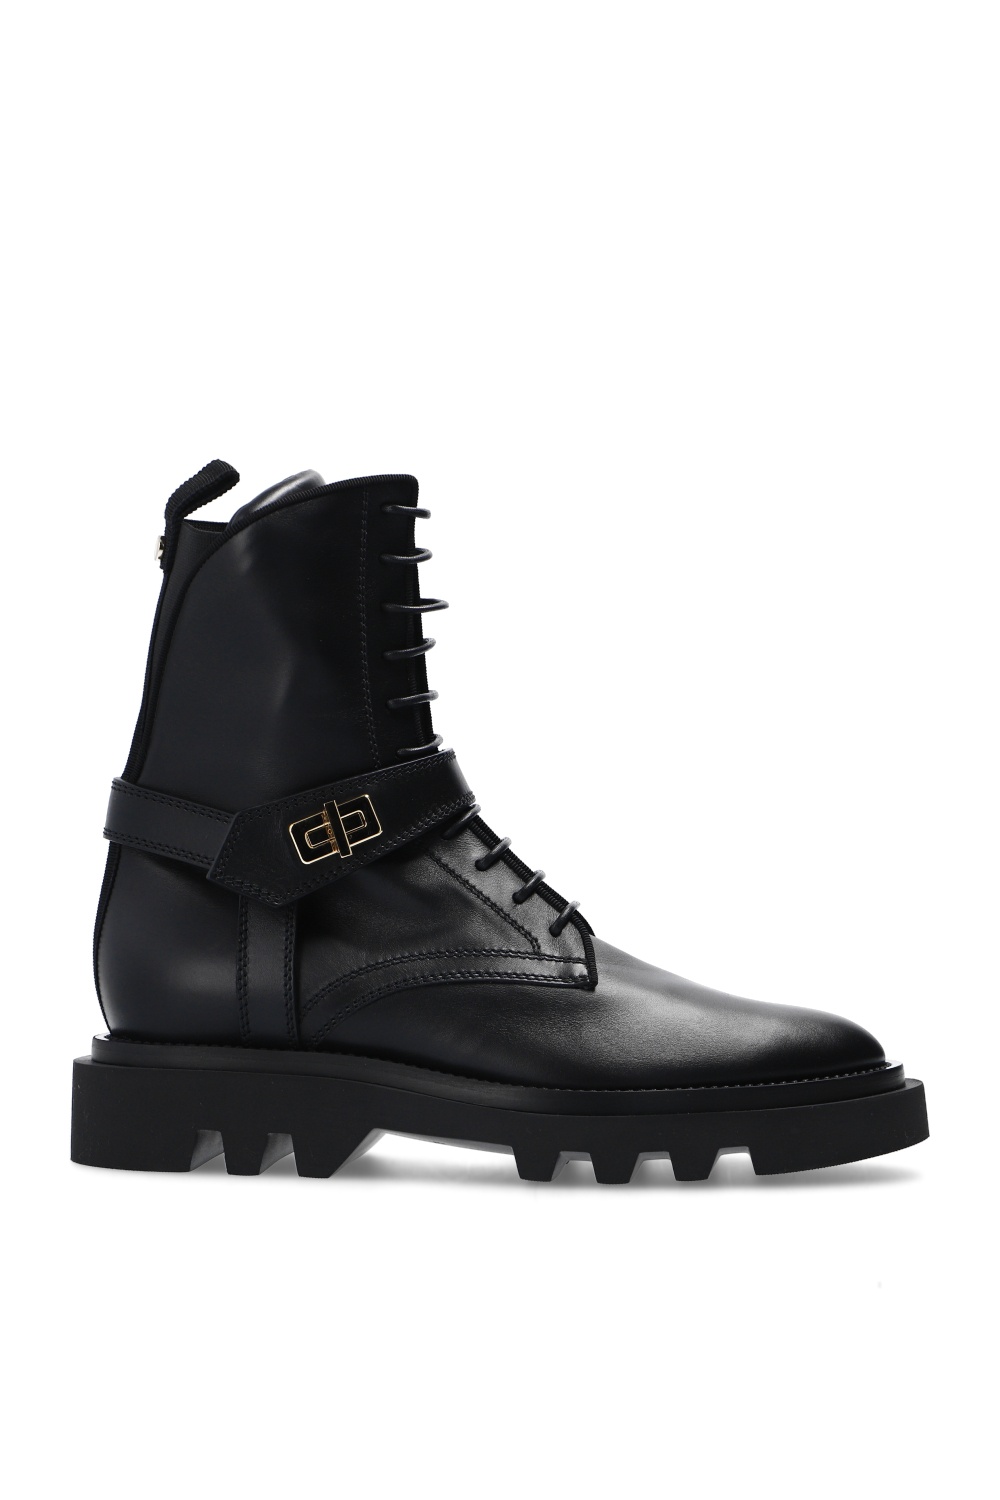 Givenchy ‘Eden’ ranger boots